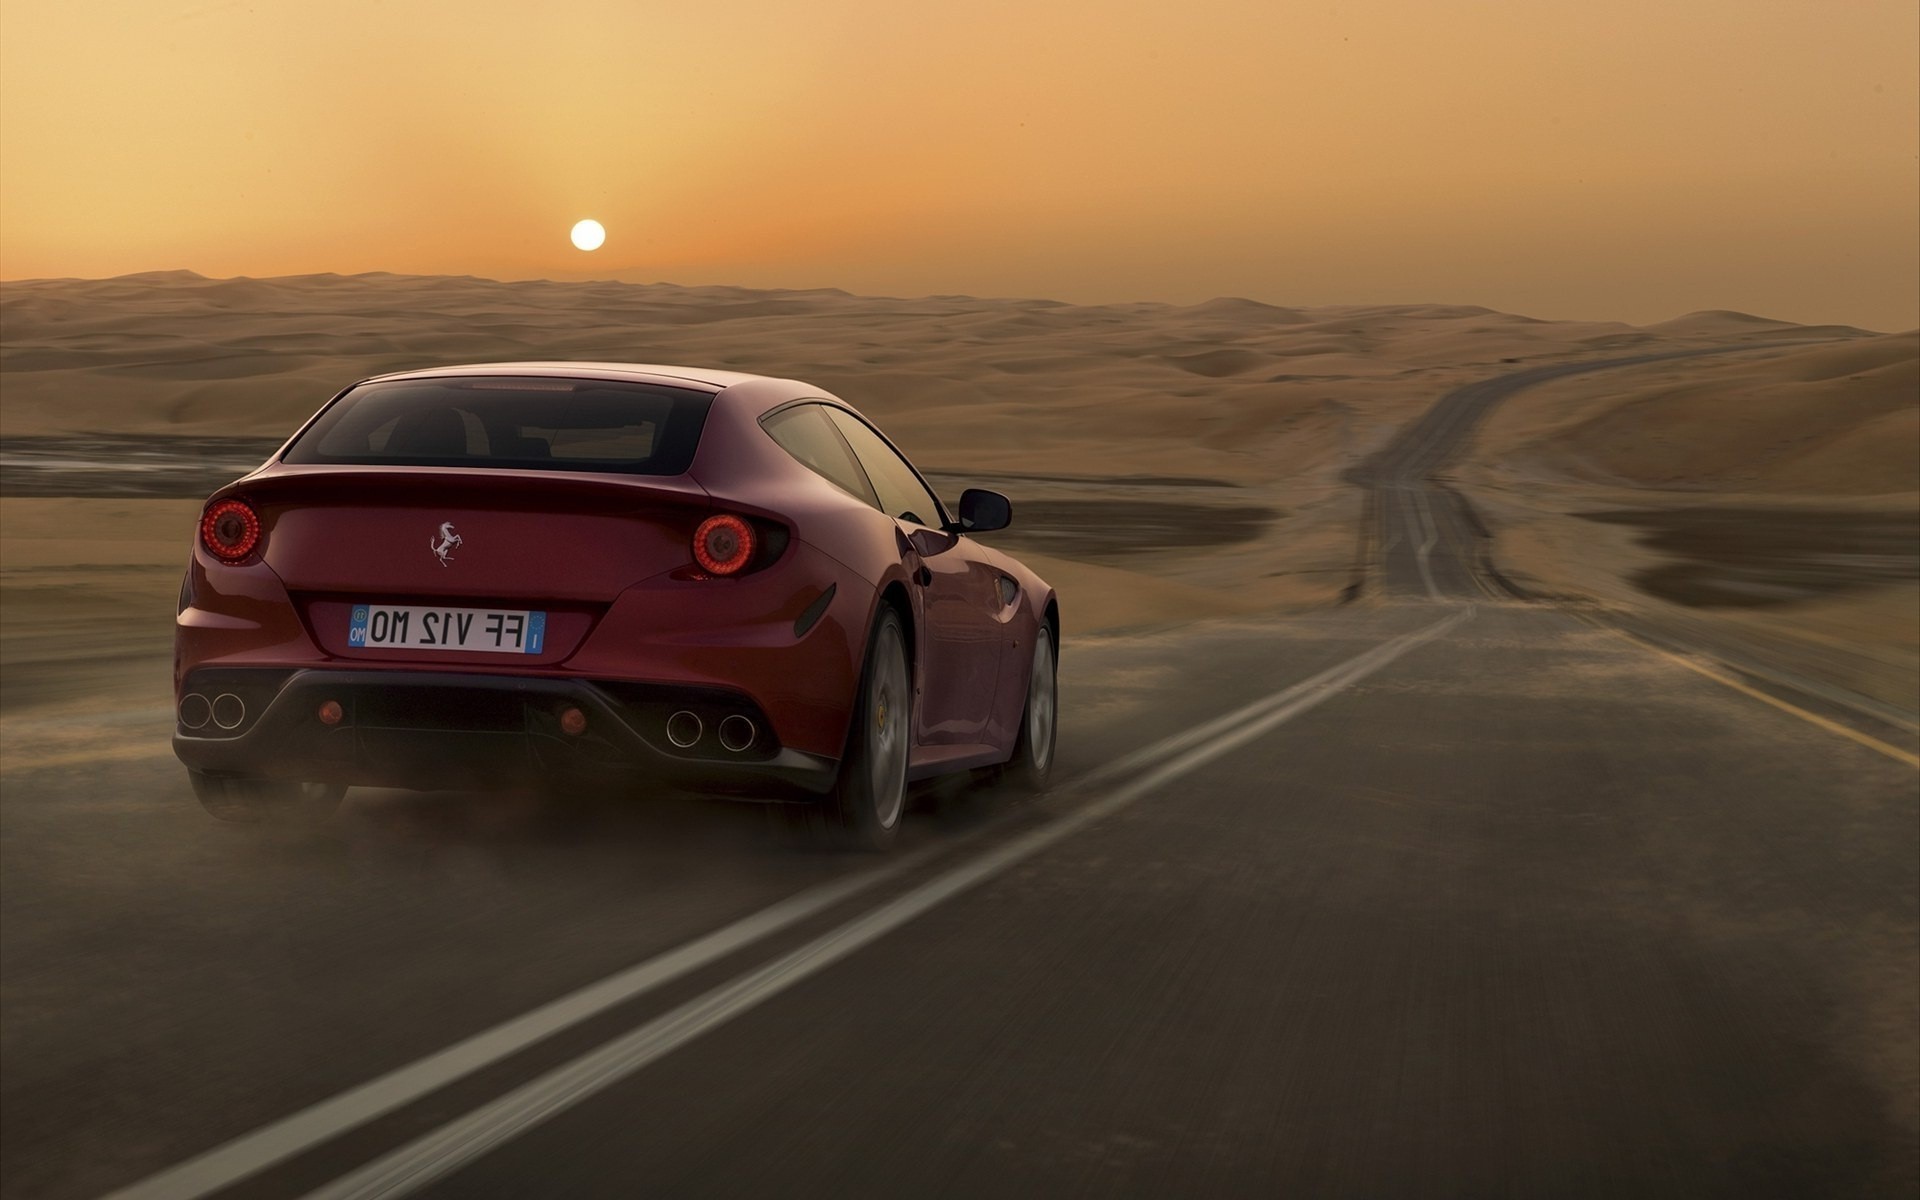 Download mobile wallpaper Sunset, Transport, Desert, Landscape, Auto, Roads, Ferrari for free.